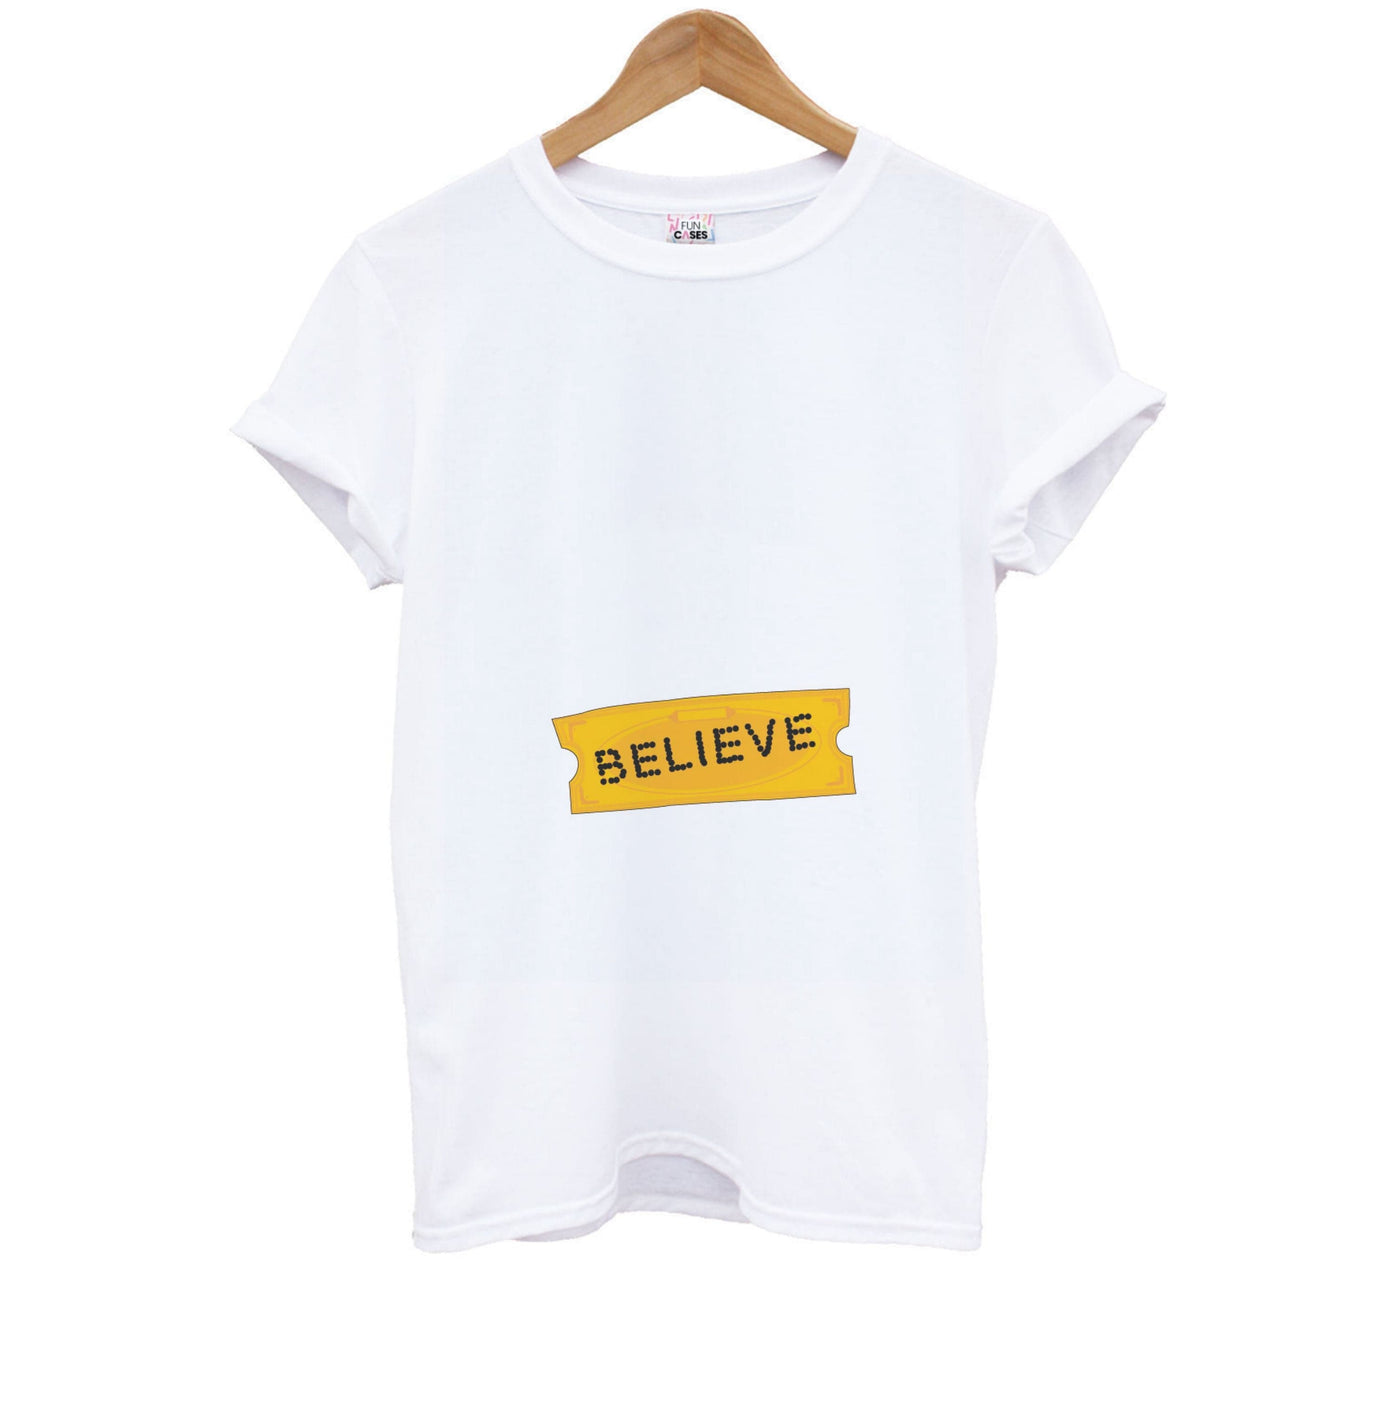 Believe - Polar Express Kids T-Shirt